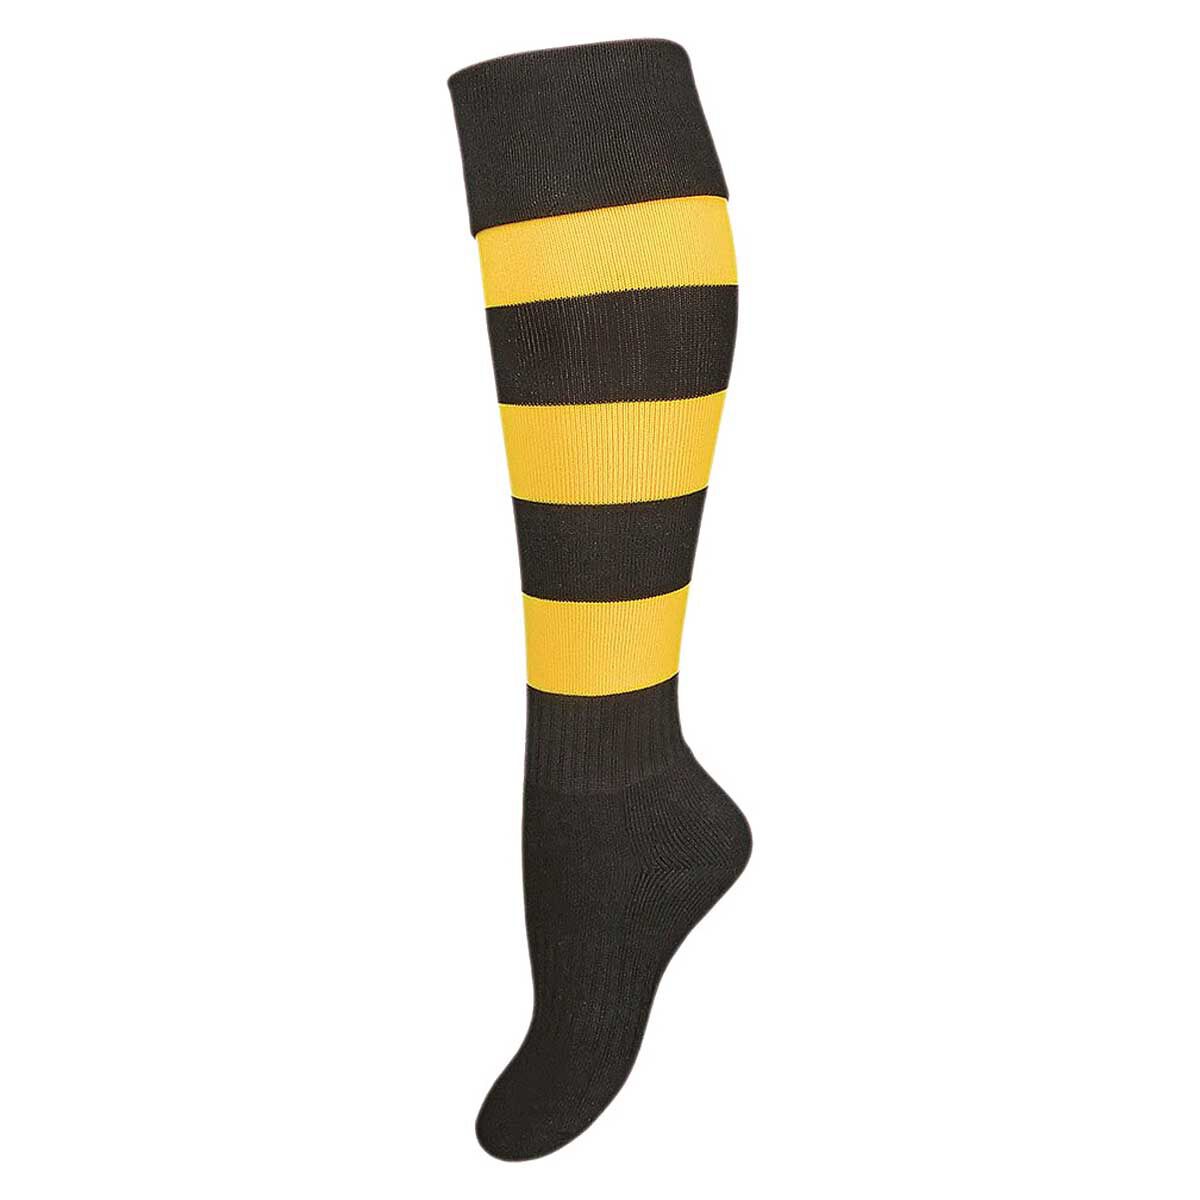 Football Socks - Tall Soccer Socks for Adults & Kids - rebel